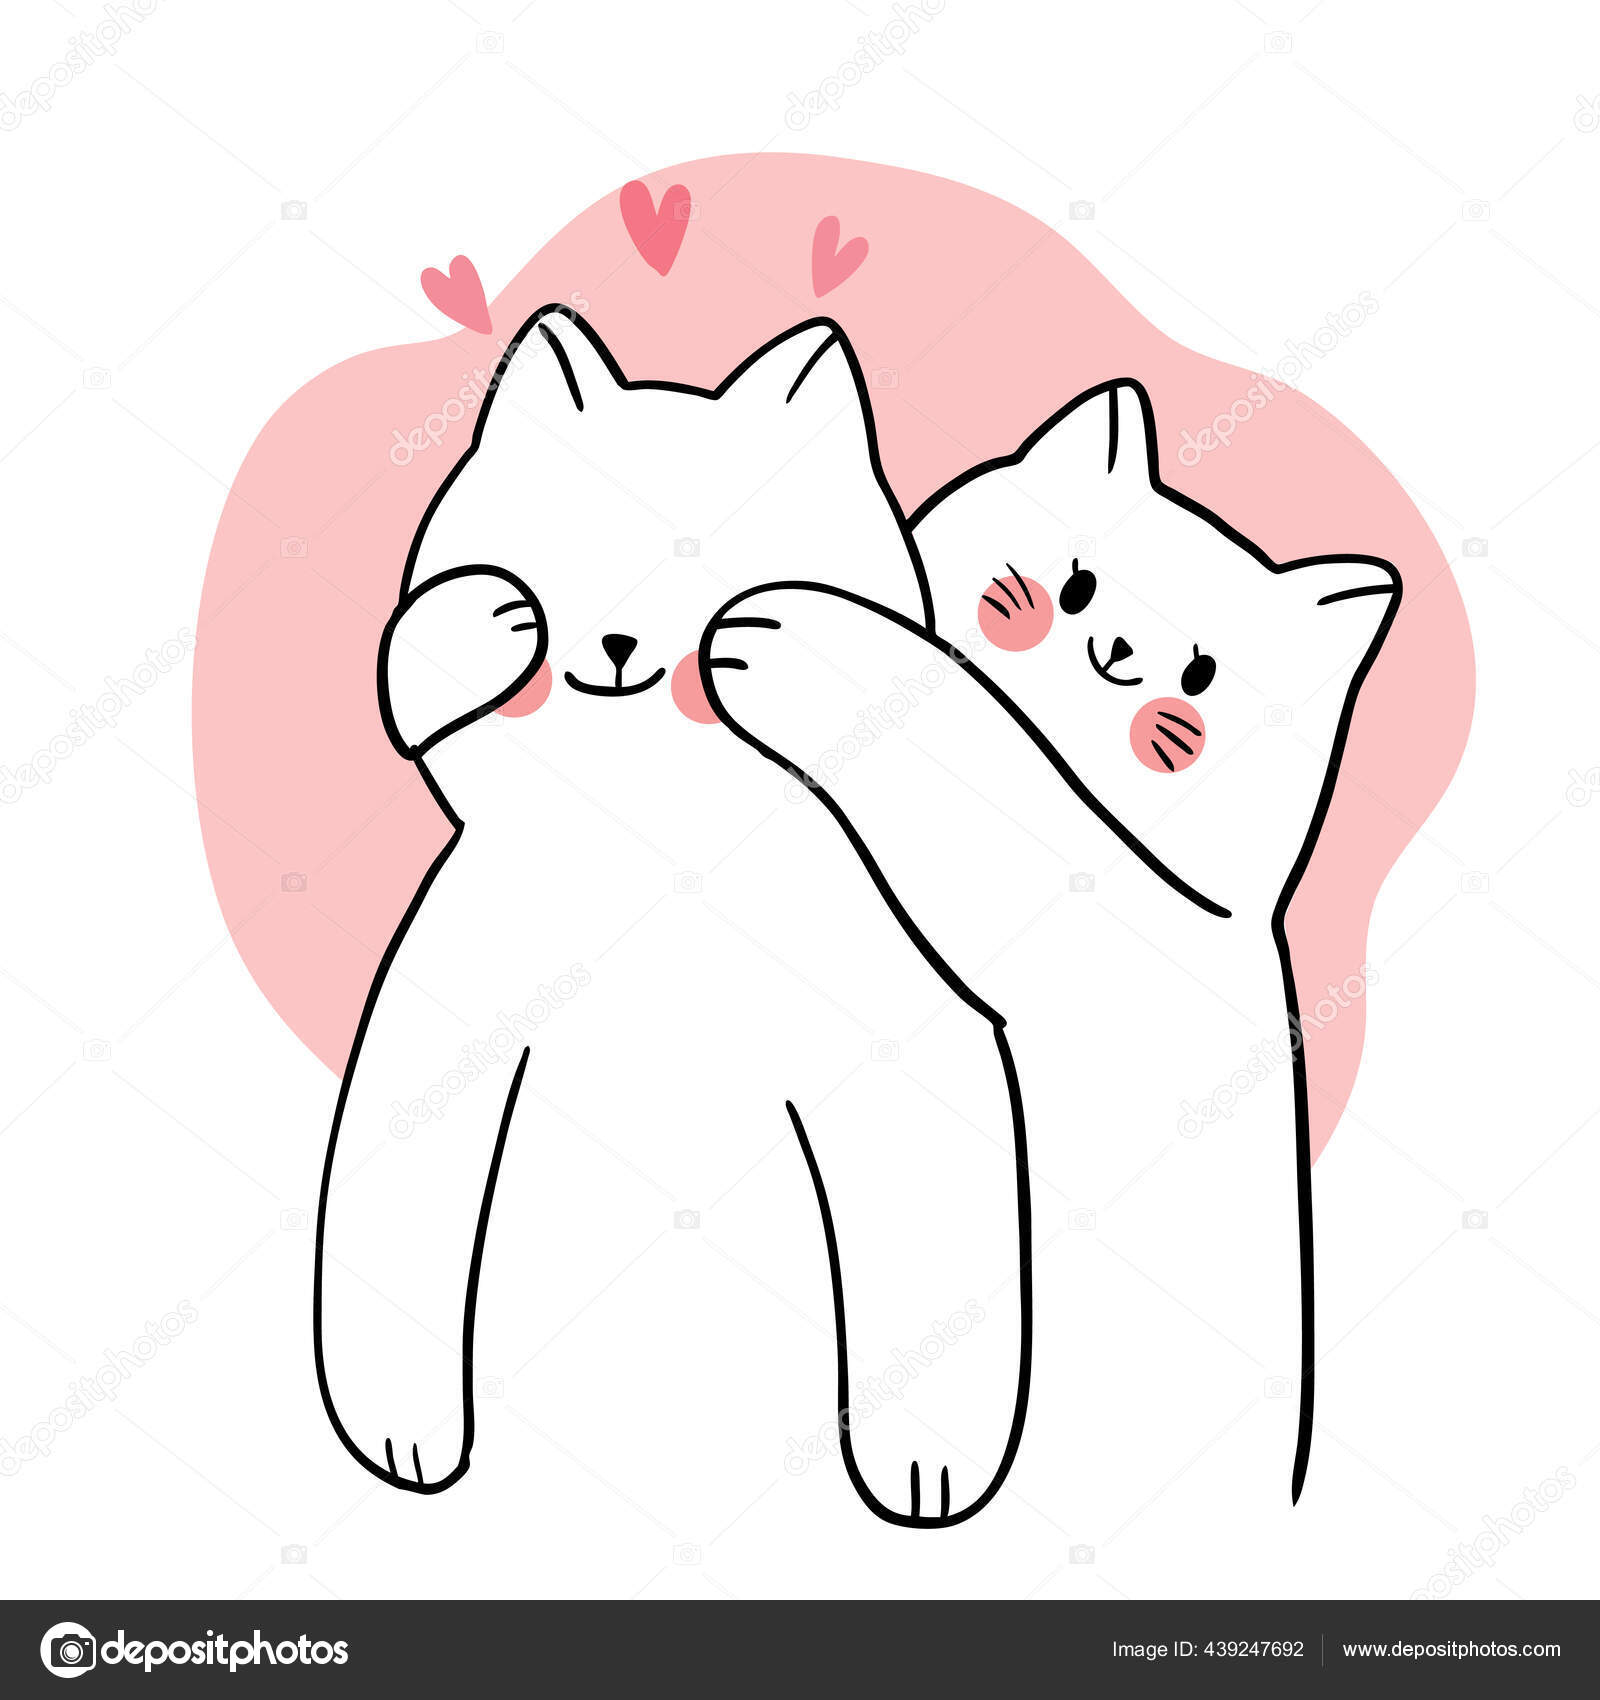 Gatos fofos da família dos desenhos animados no vetor de amor